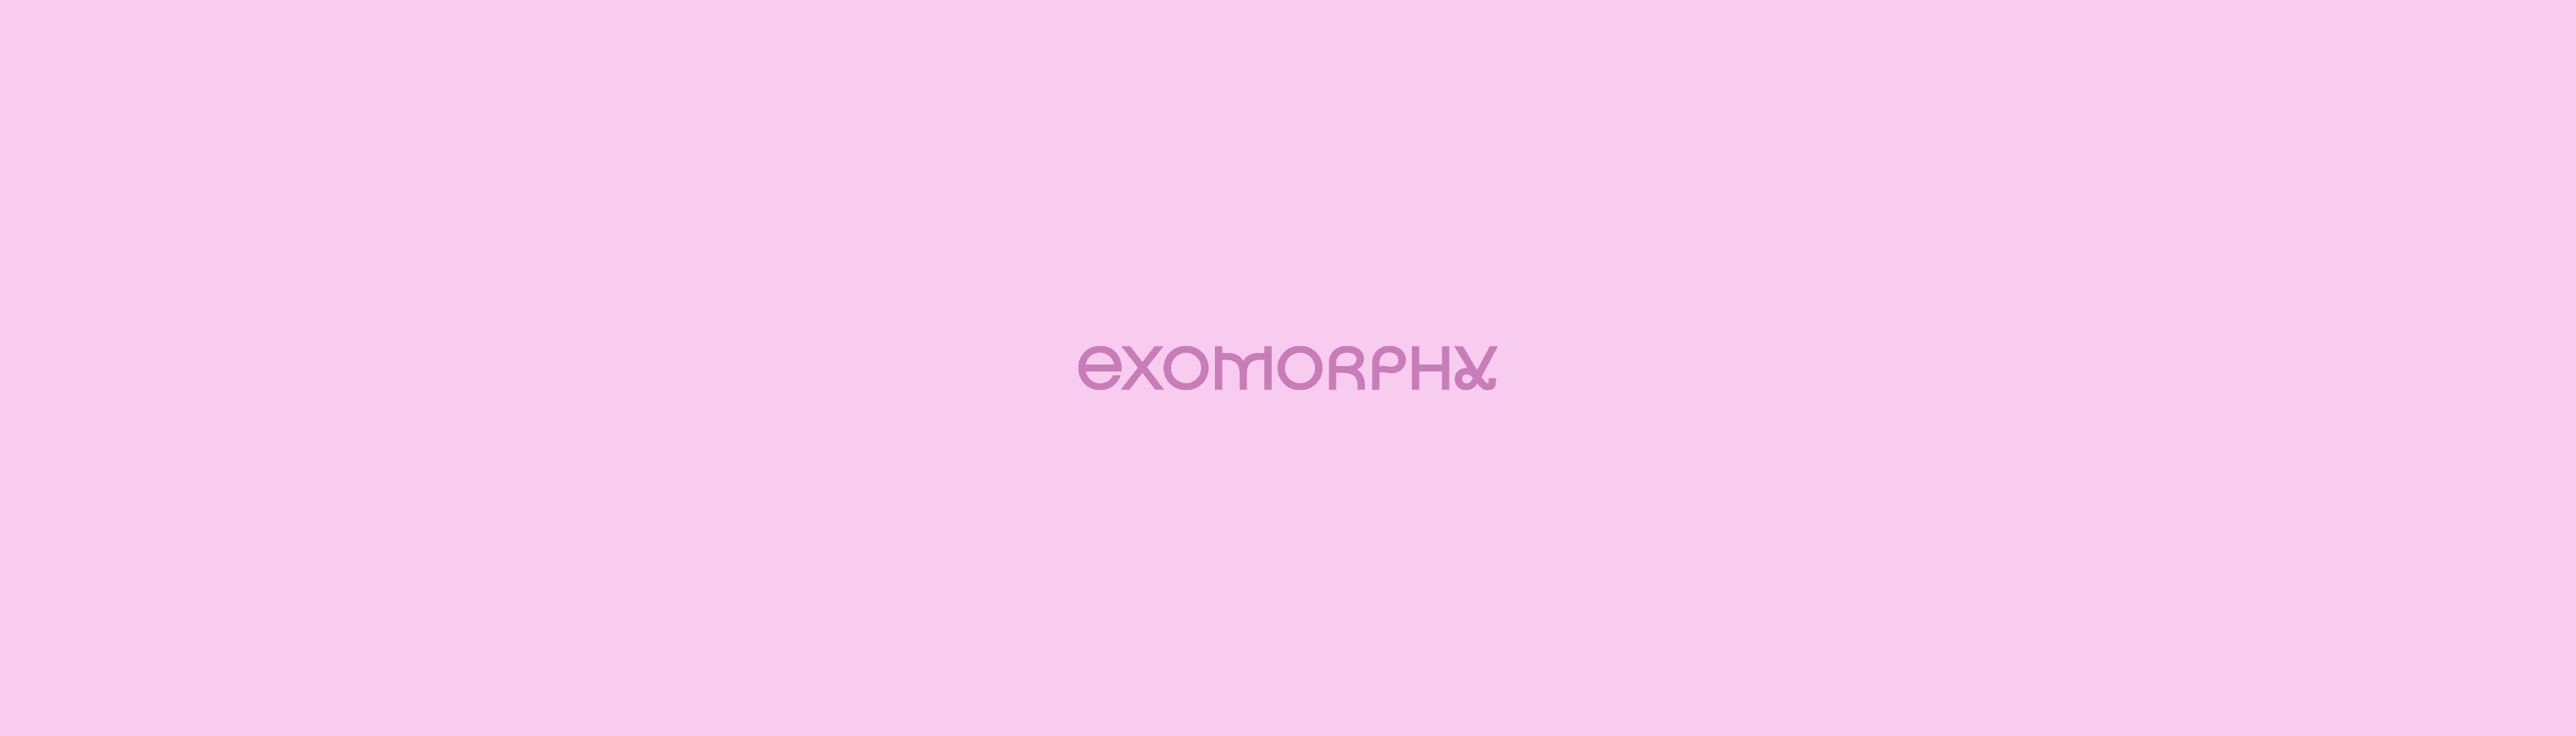 Exomorphy